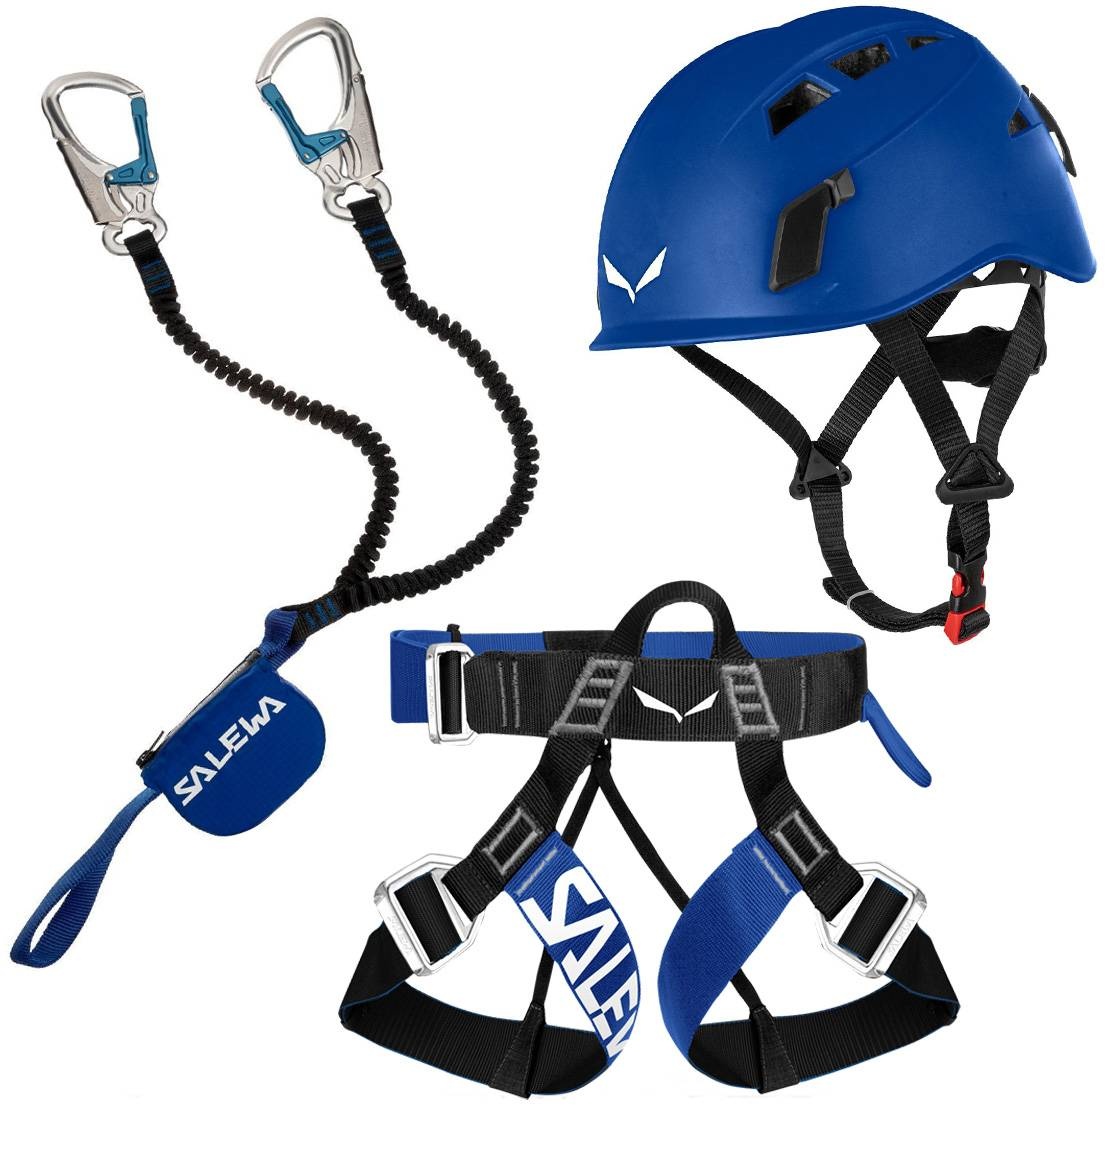 Klettersteig Komplettset Salewa Premium Attac plus Gurt und Helm blue